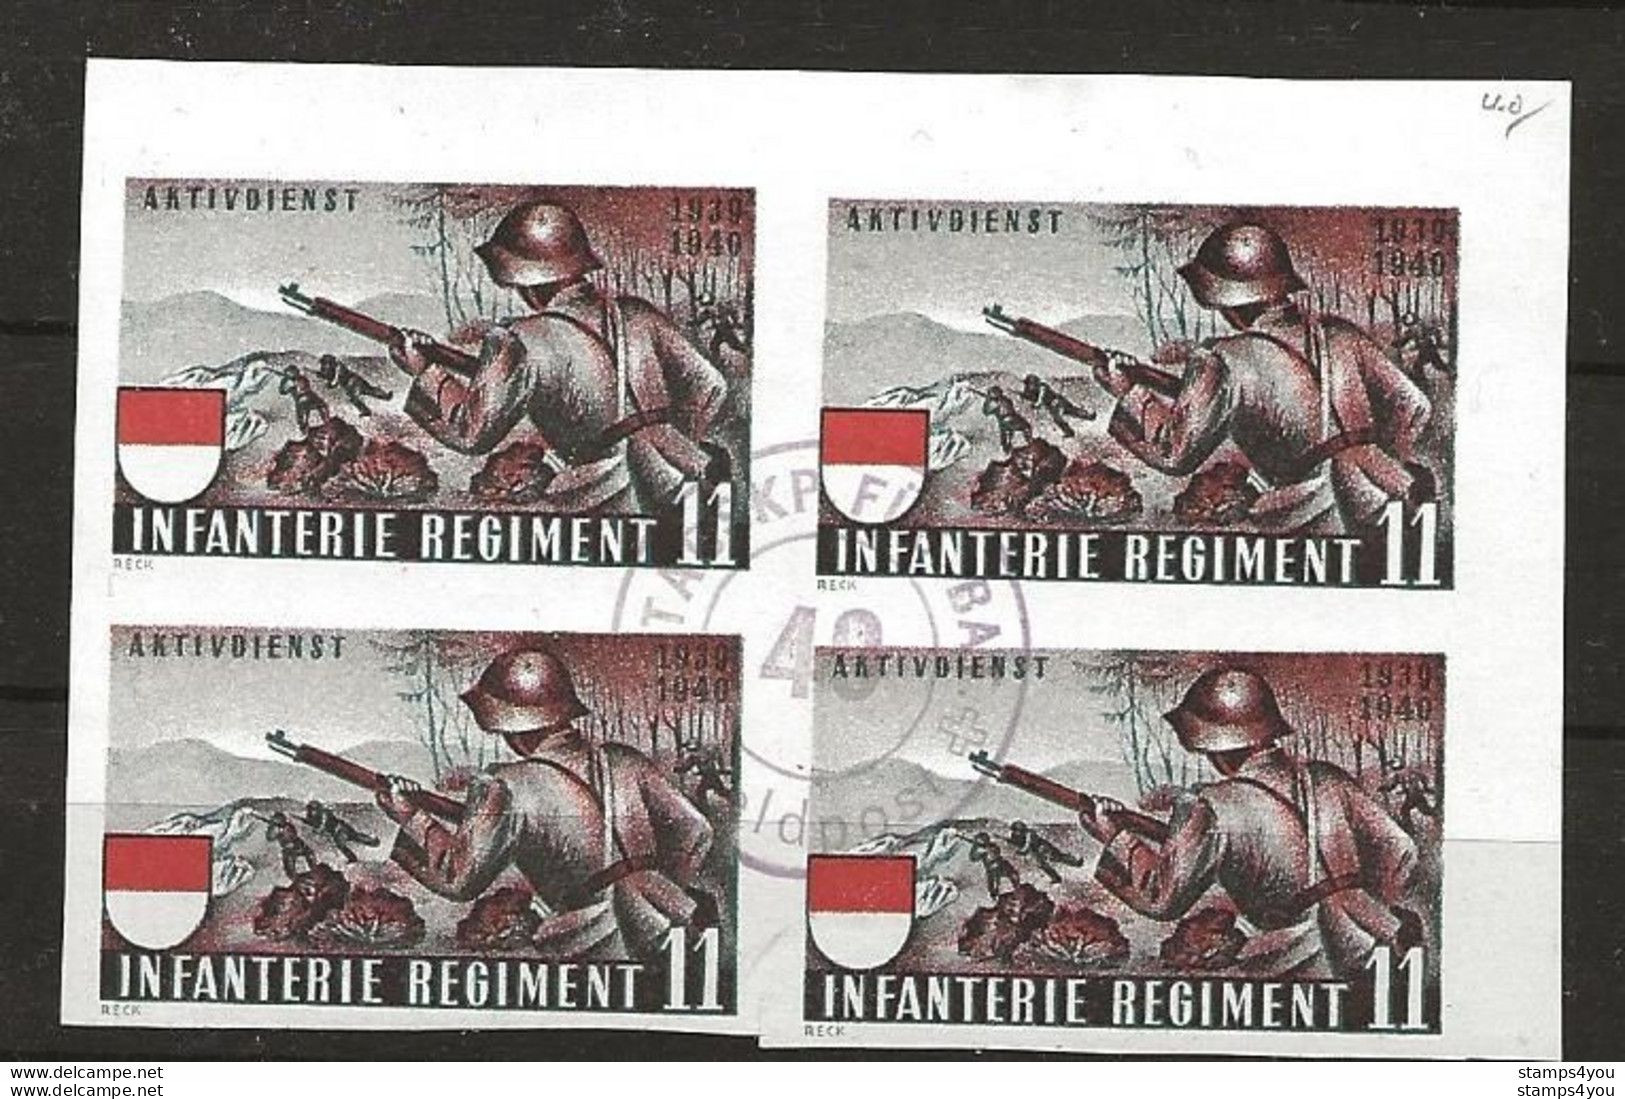 407 - 73 - Bloc Non-dentelé Oblitéré "Infanterie Regiment 11" Cachet Feldpost - Vignetten